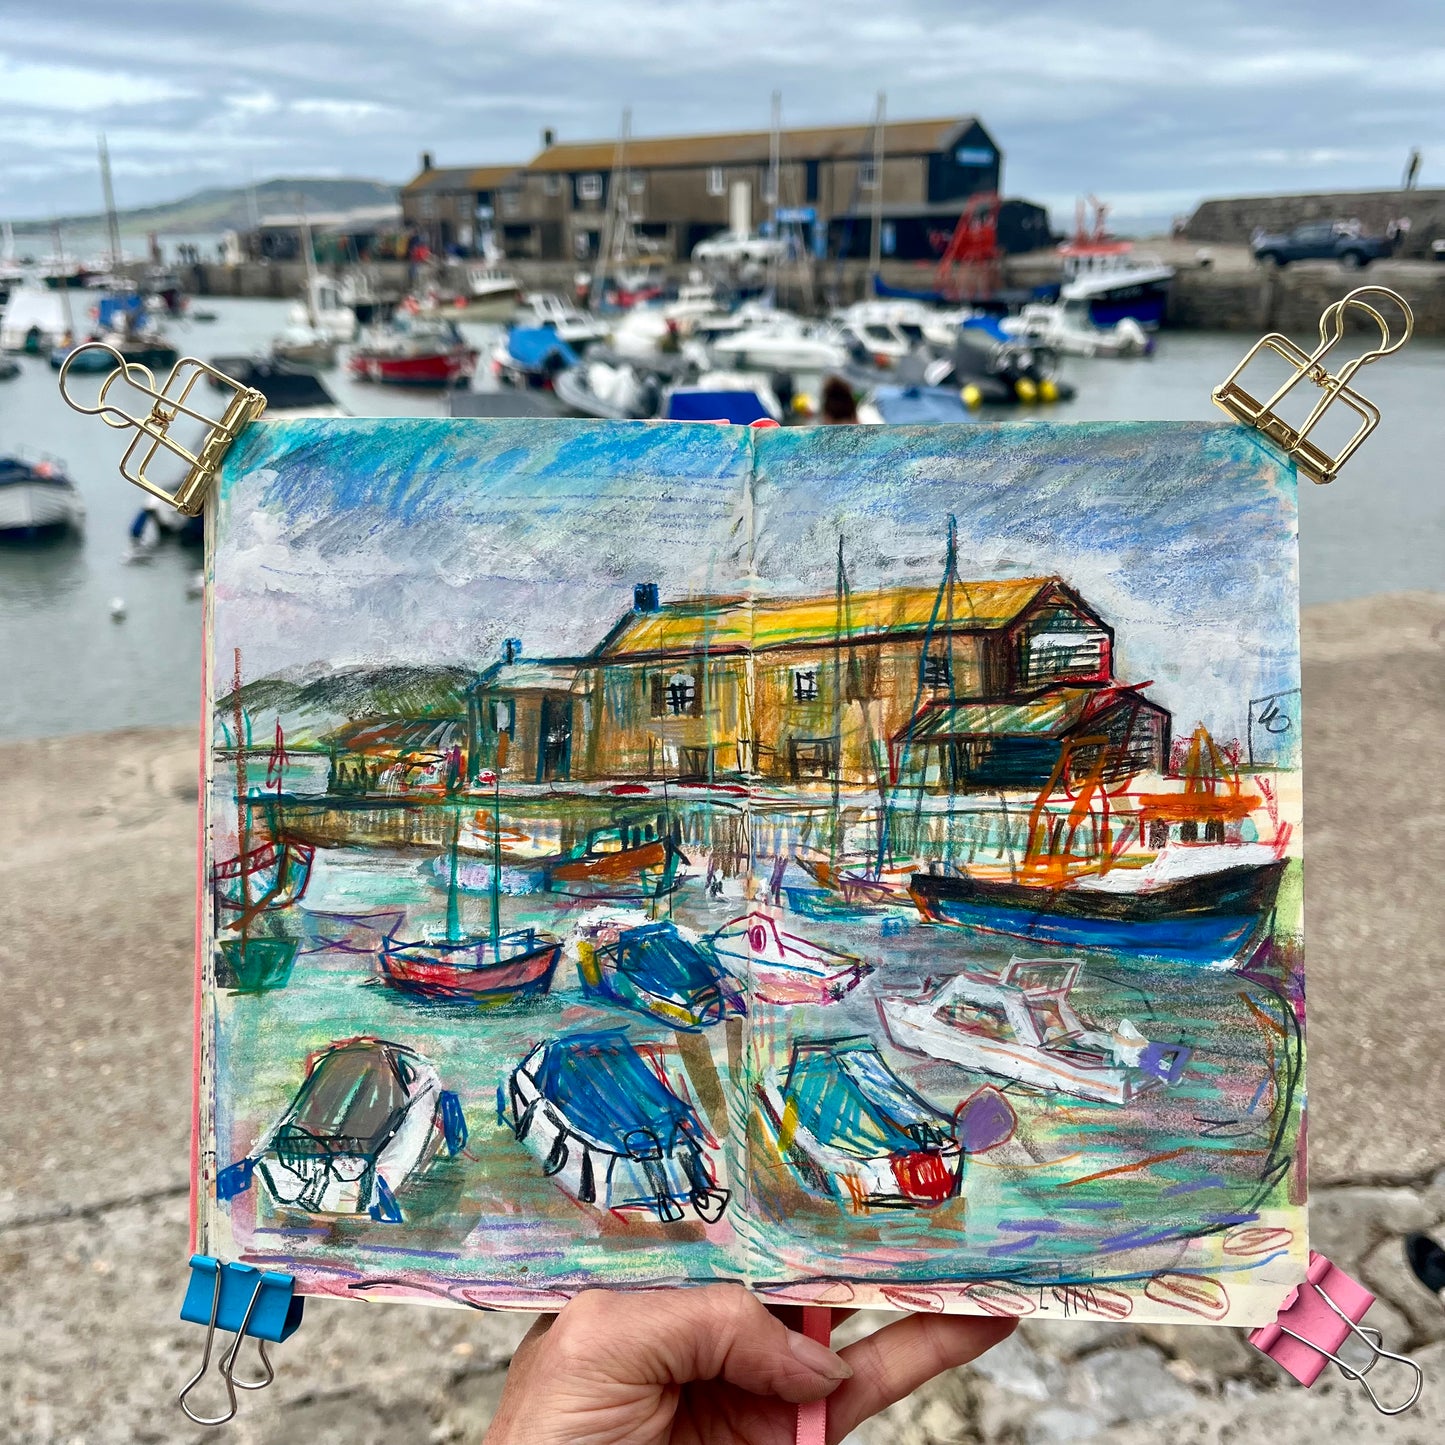 Lyme Regis harbour